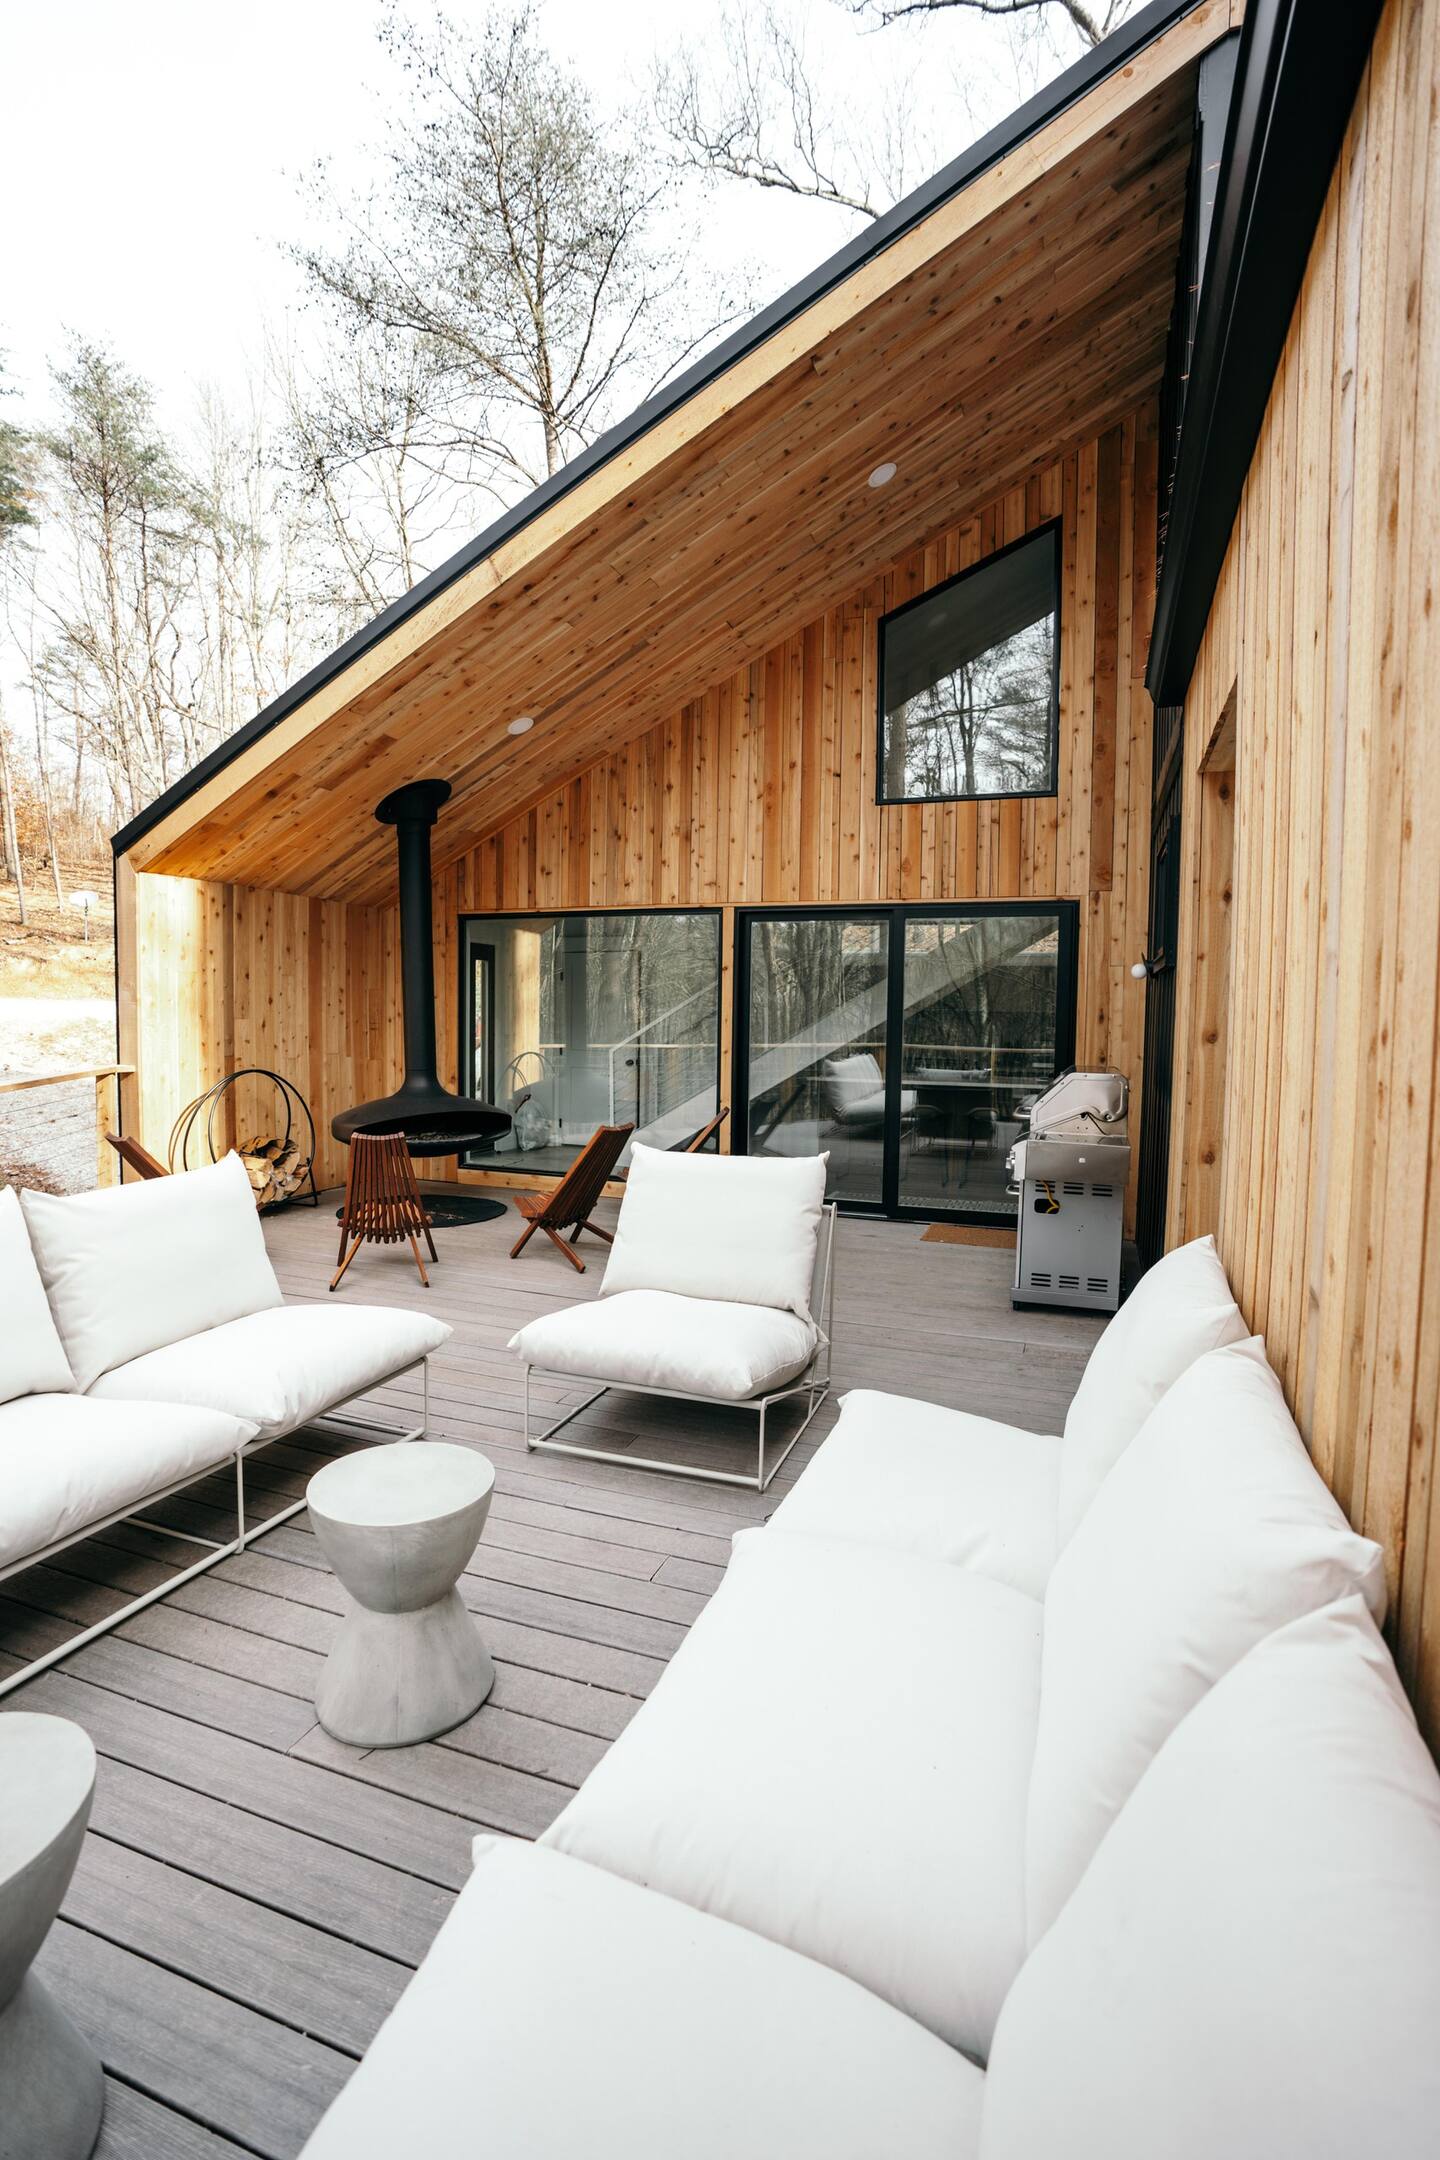 terrasse en bois avec cheminée extérieure Focus